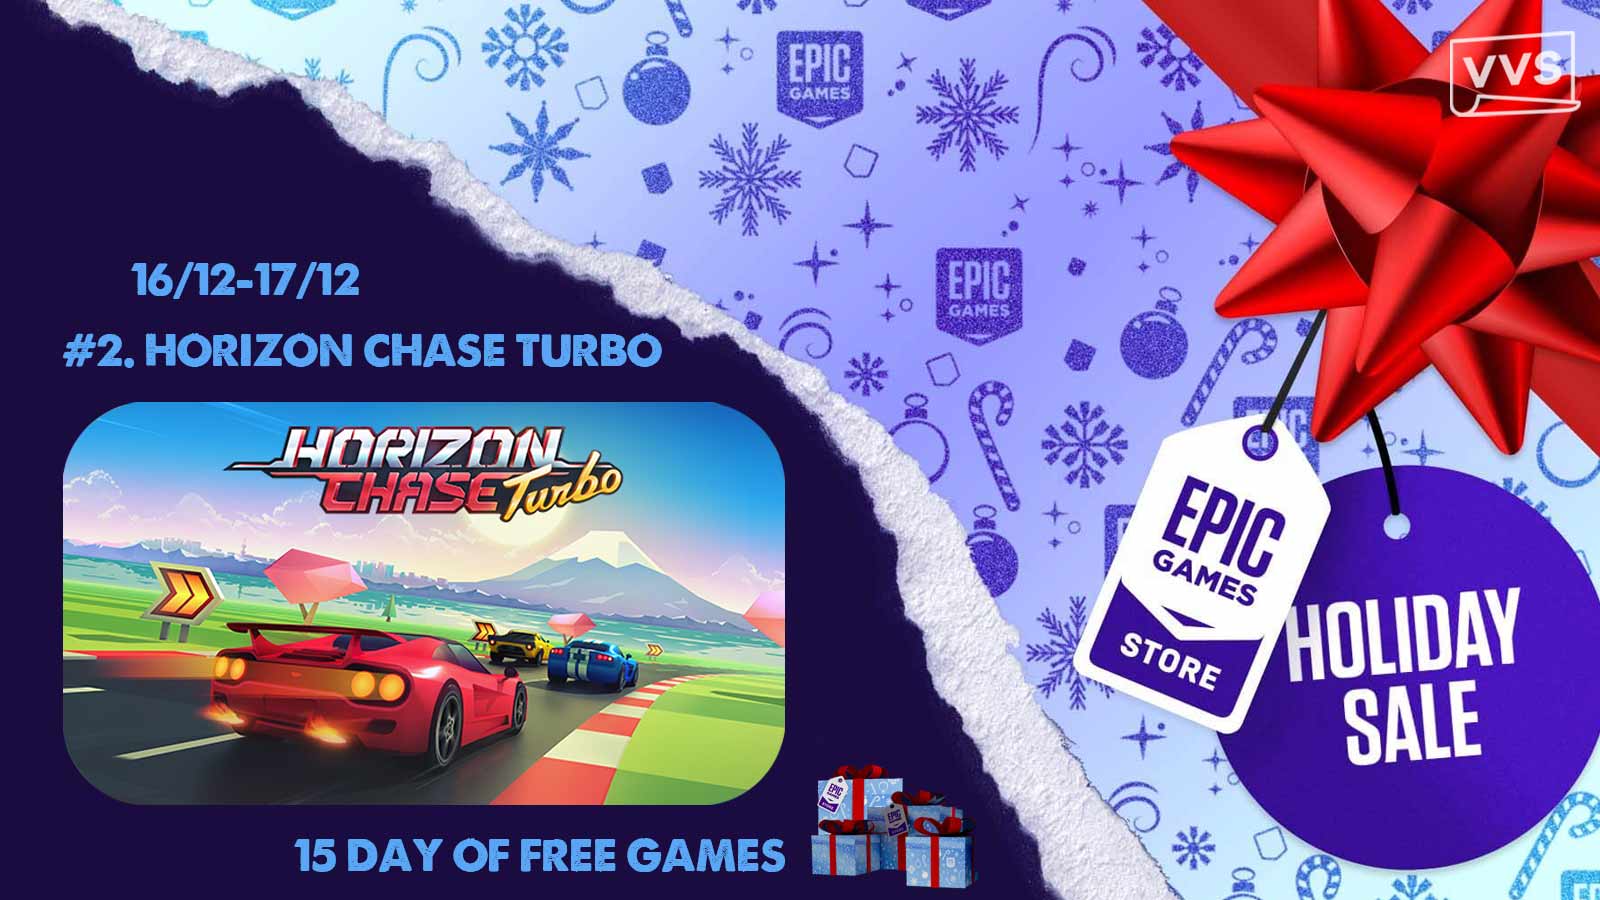 Epic Games Store miễn phí tựa game Horizon Chase Turbo trị giá 190 nghìn đồng